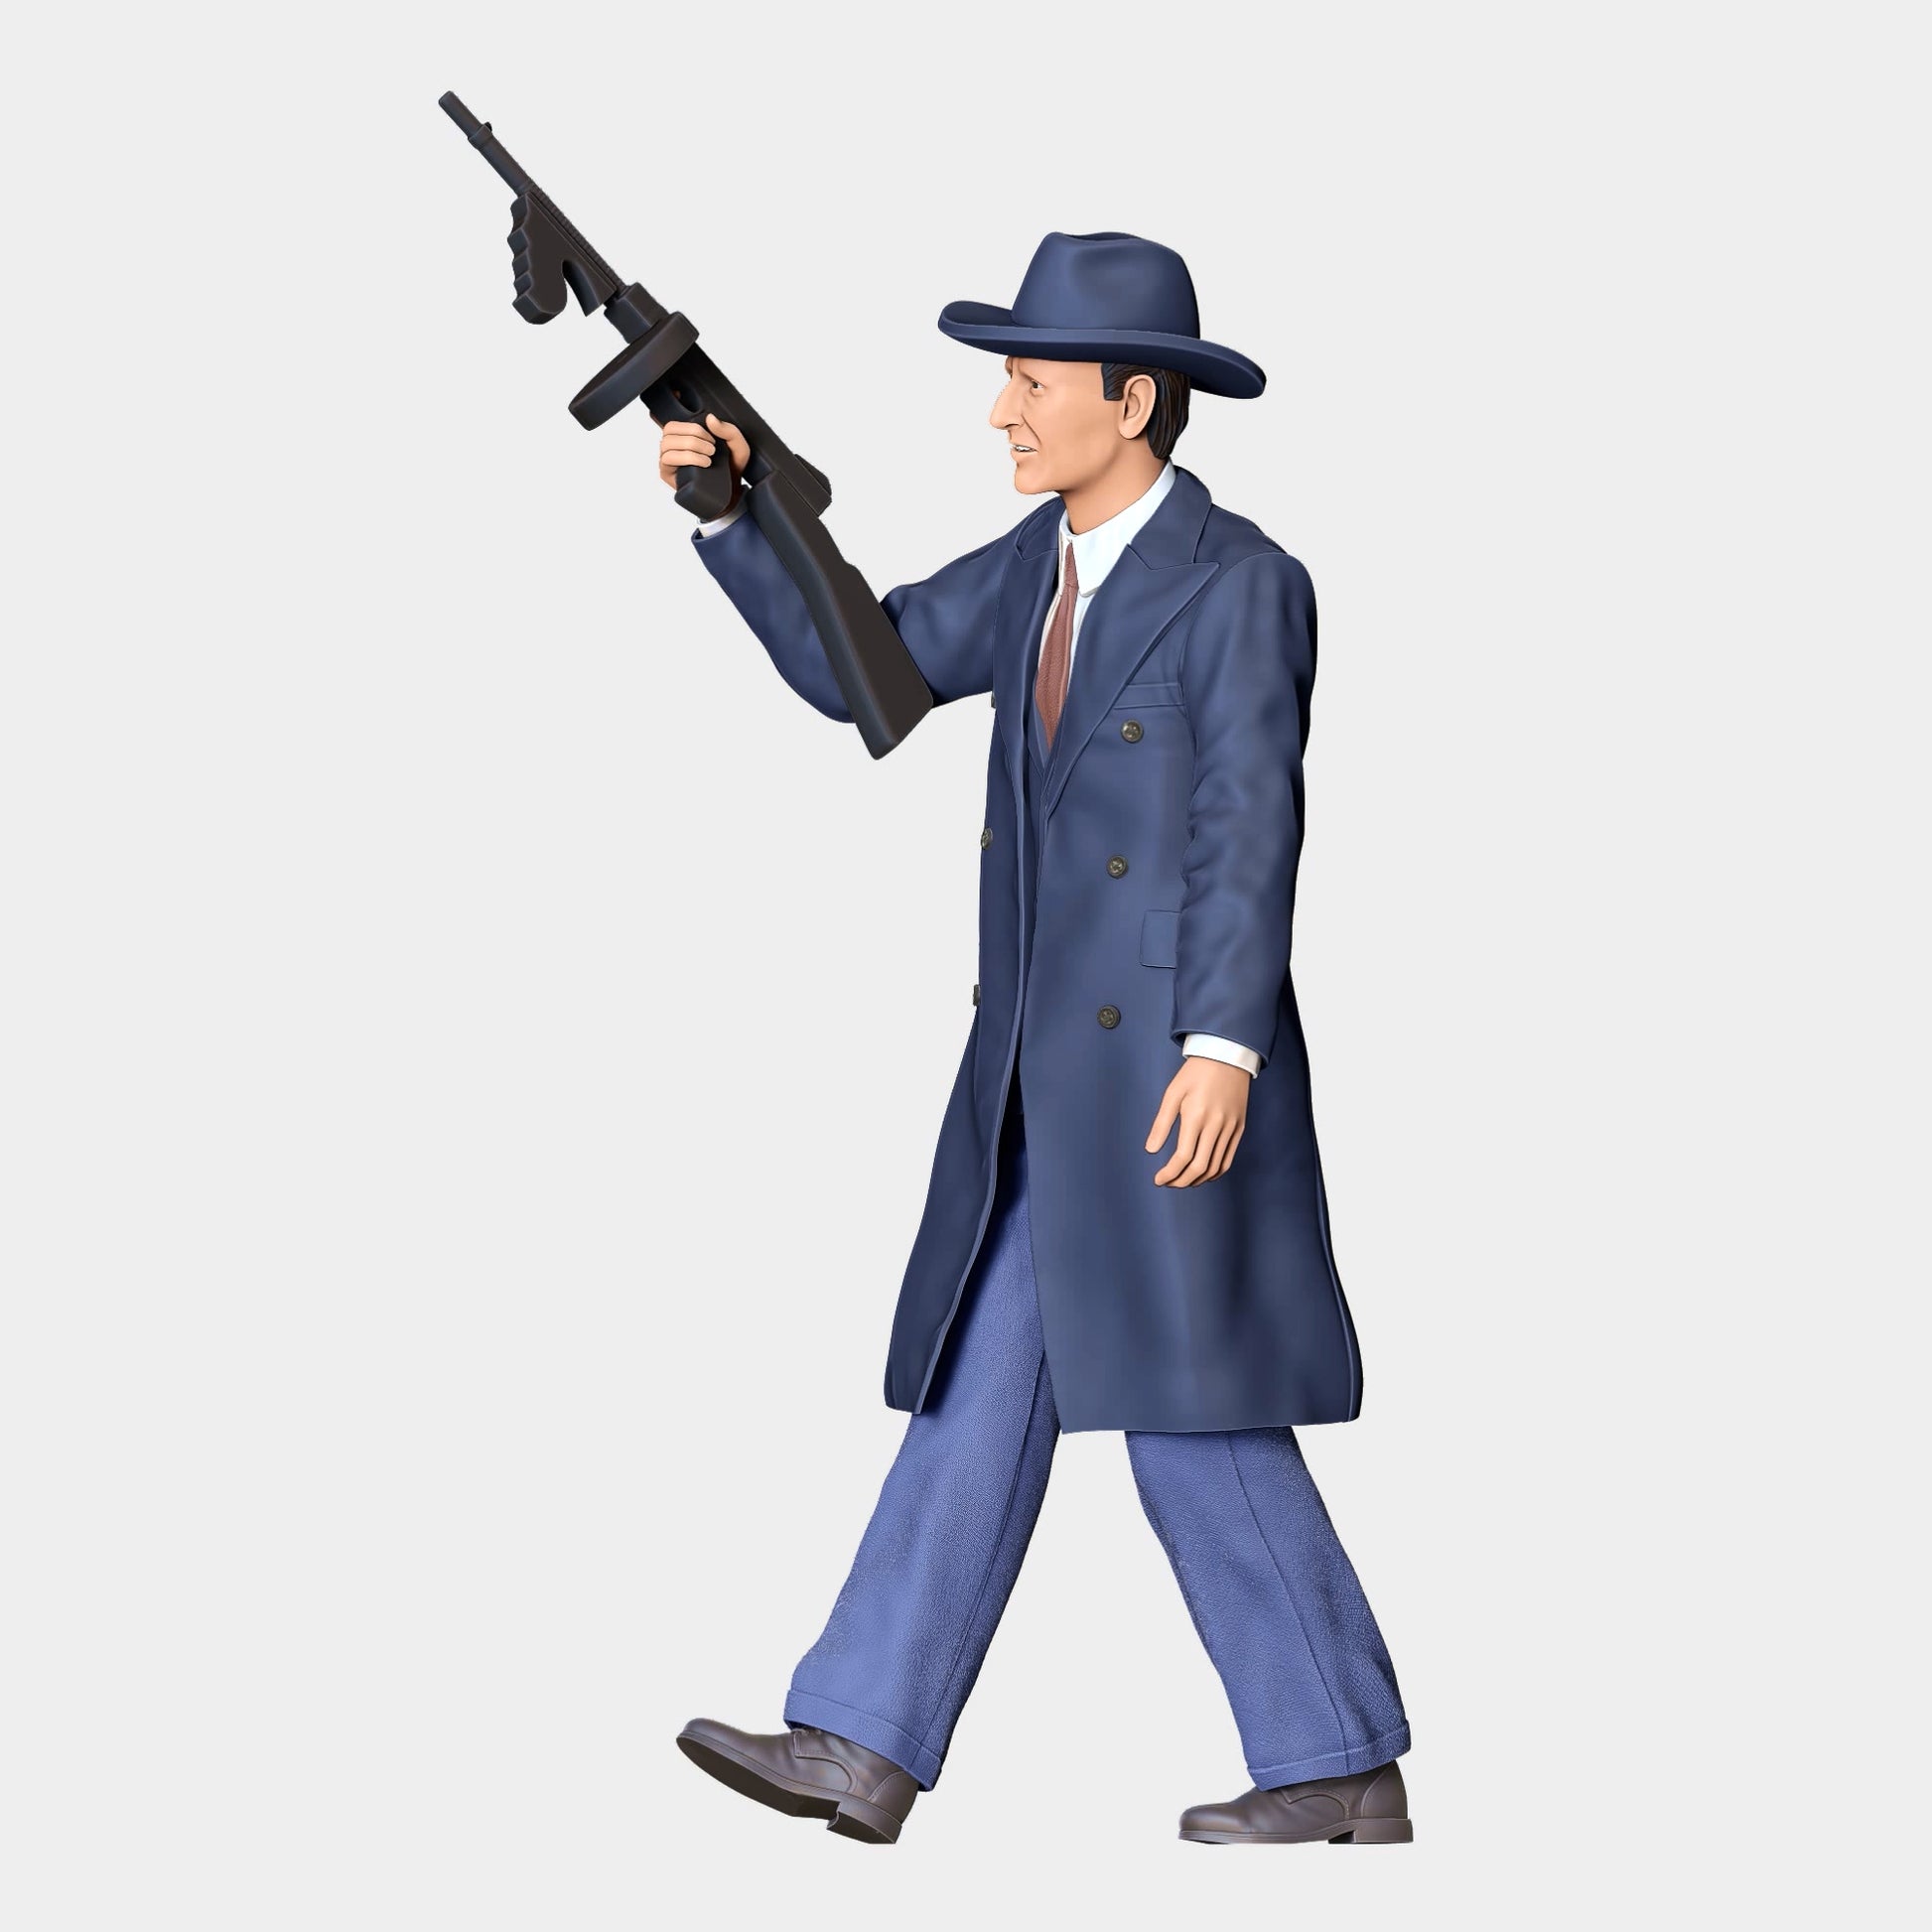 Produktfoto Diorama und Modellbau Miniatur Figur: Mafiosi: Mafia Gangster 3